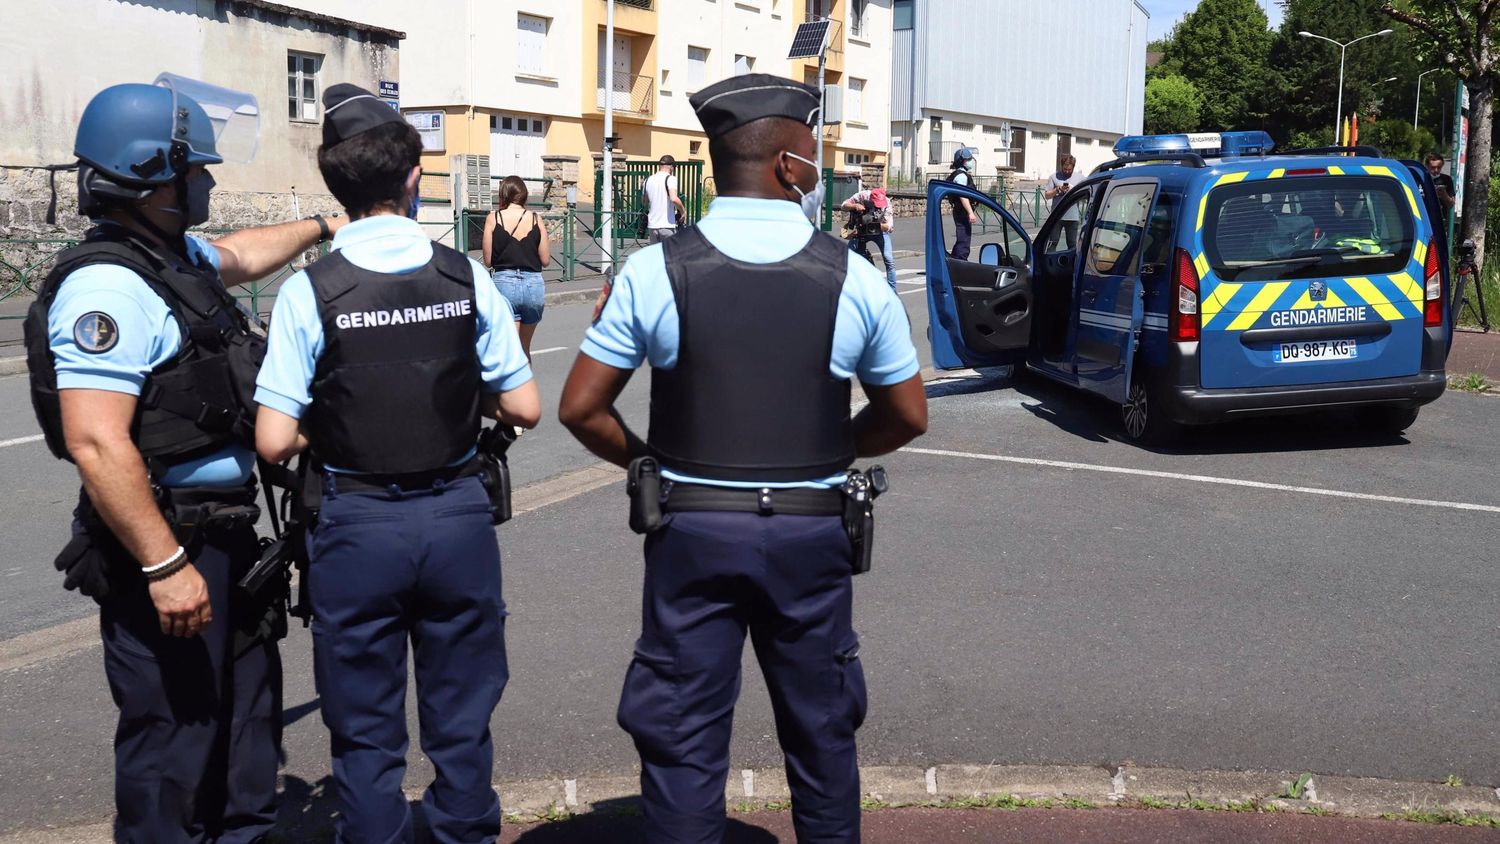 Dordogne : le GIGN forcé d’intervenir sur un homme armé menaçant 